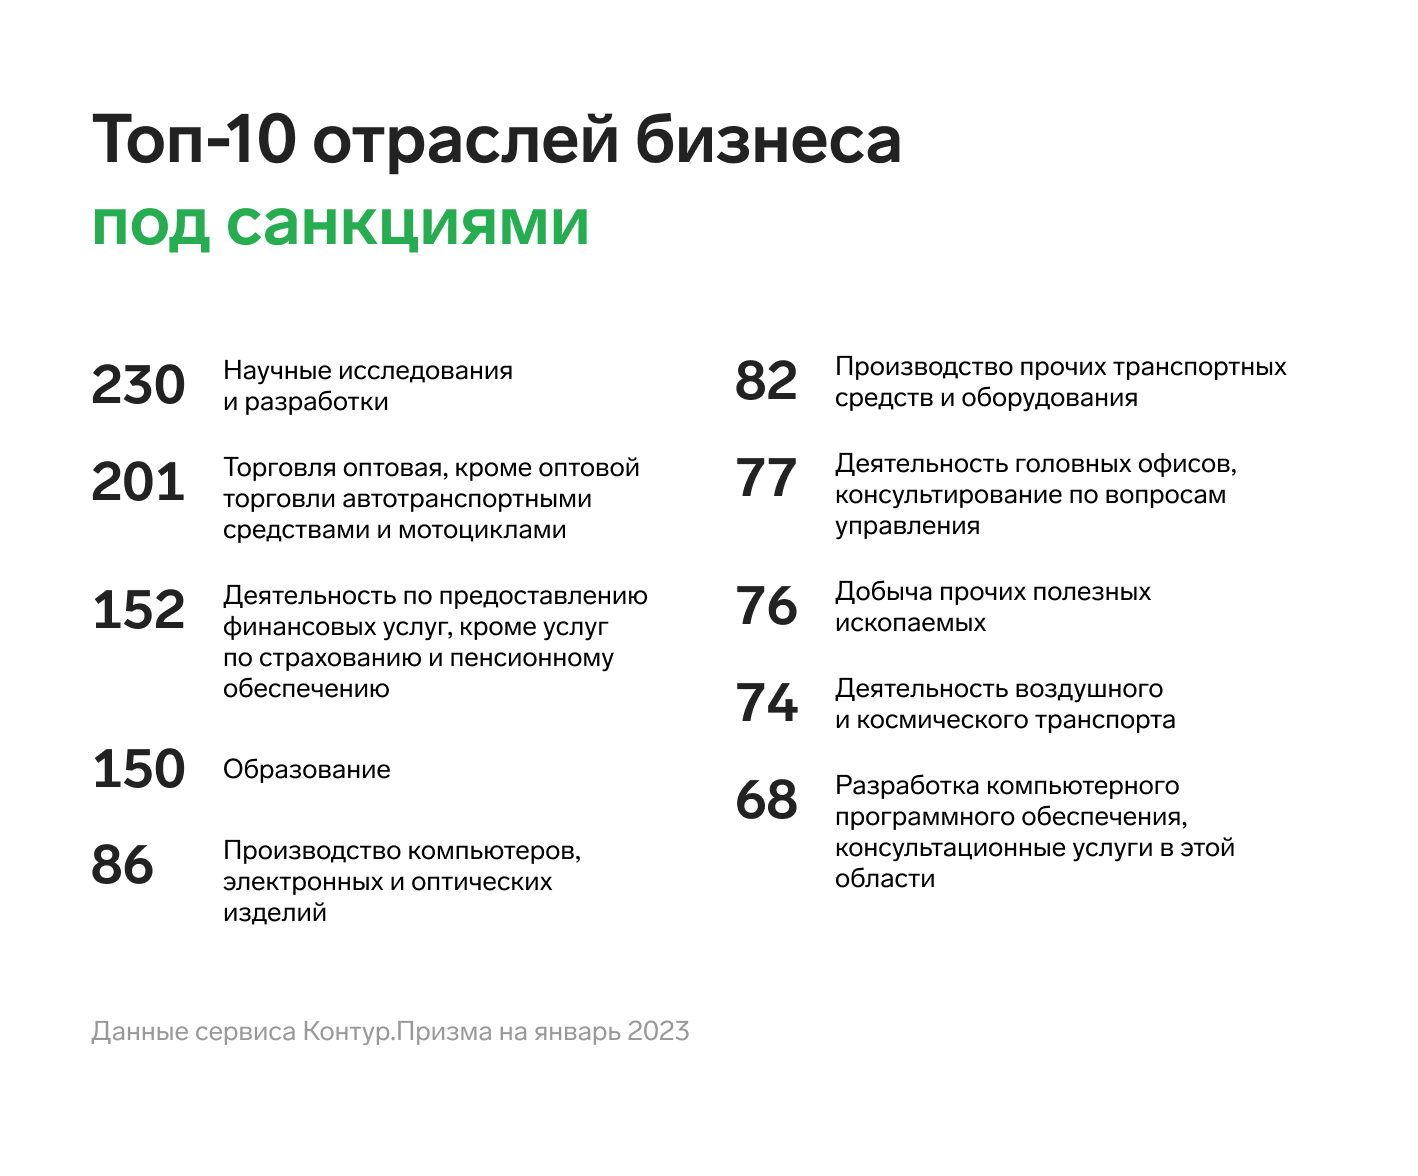 Топ-10 отраслей бизнеса под санкциями